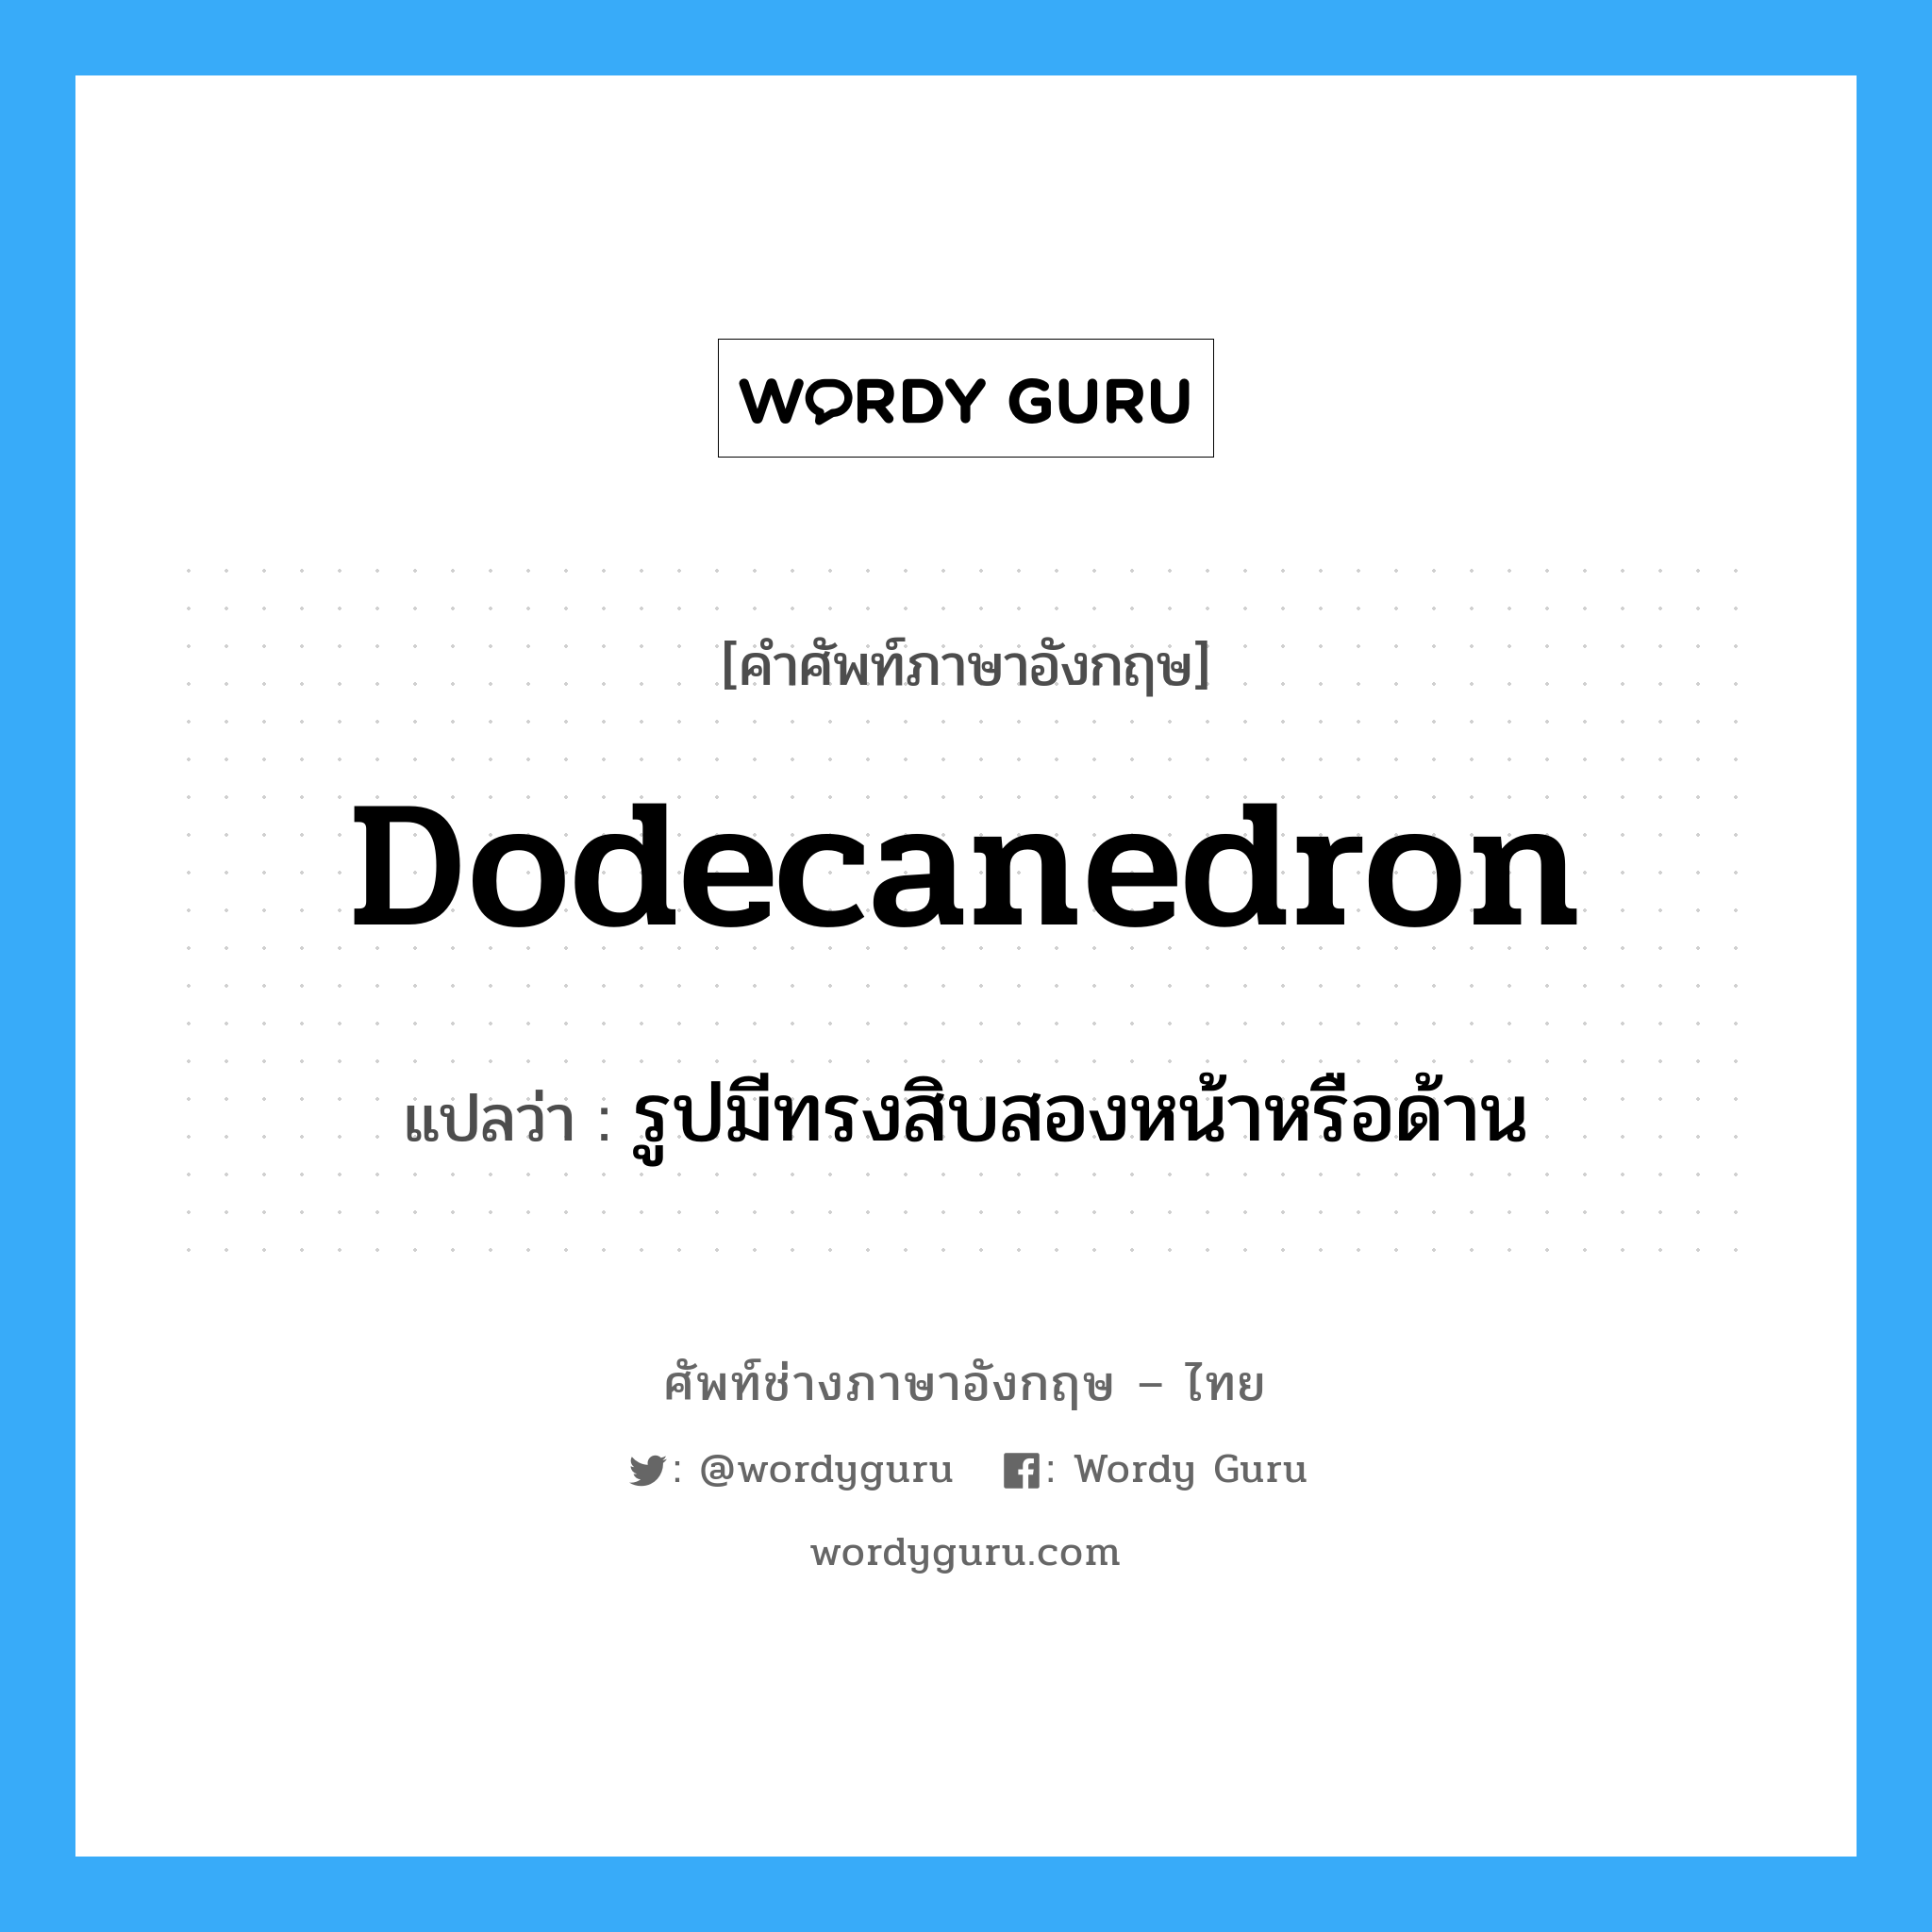 dodecanedron แปลว่า?, คำศัพท์ช่างภาษาอังกฤษ - ไทย dodecanedron คำศัพท์ภาษาอังกฤษ dodecanedron แปลว่า รูปมีทรงสิบสองหน้าหรือด้าน